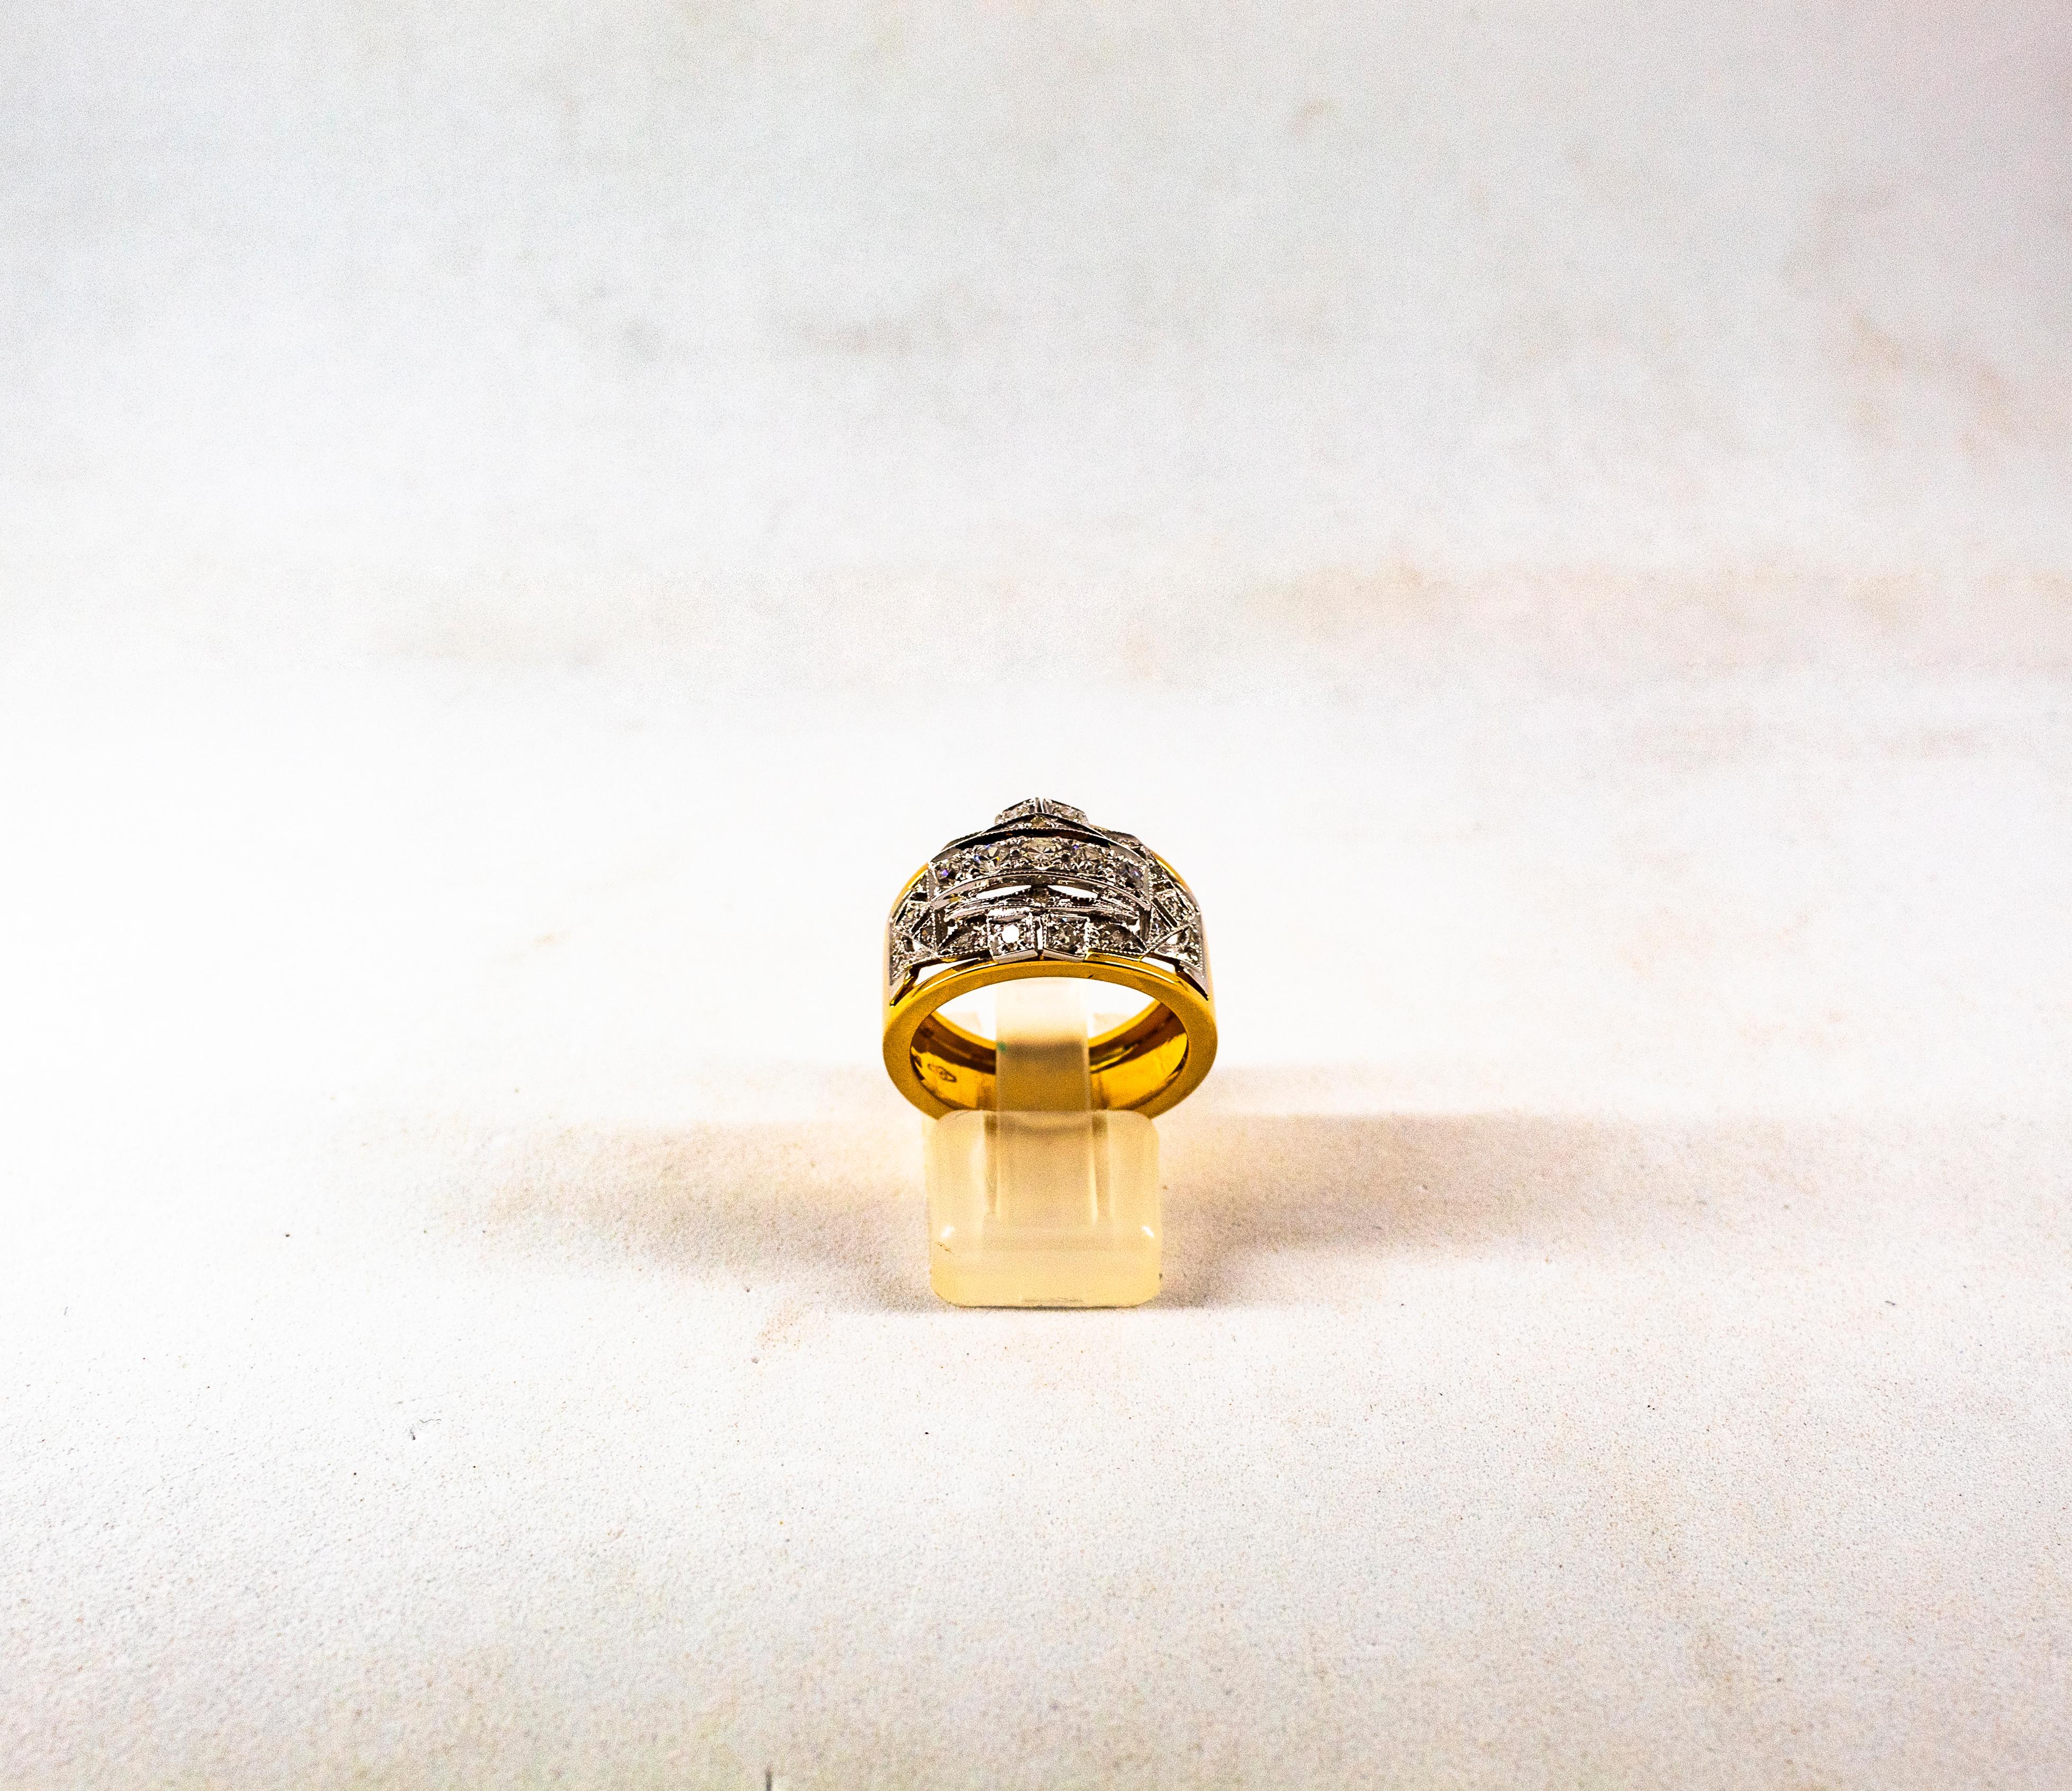 Dieser Ring ist aus 14K Gelb- und Weißgold gefertigt.
Dieser Ring hat 0,75 Karat weiße Diamanten im europäischen Schliff.
Größe ITA: 15 USA: 7 1/4

Da wir eine Werkstatt sind, ist jedes Stück handgefertigt, anpassbar und in der Größe veränderbar.